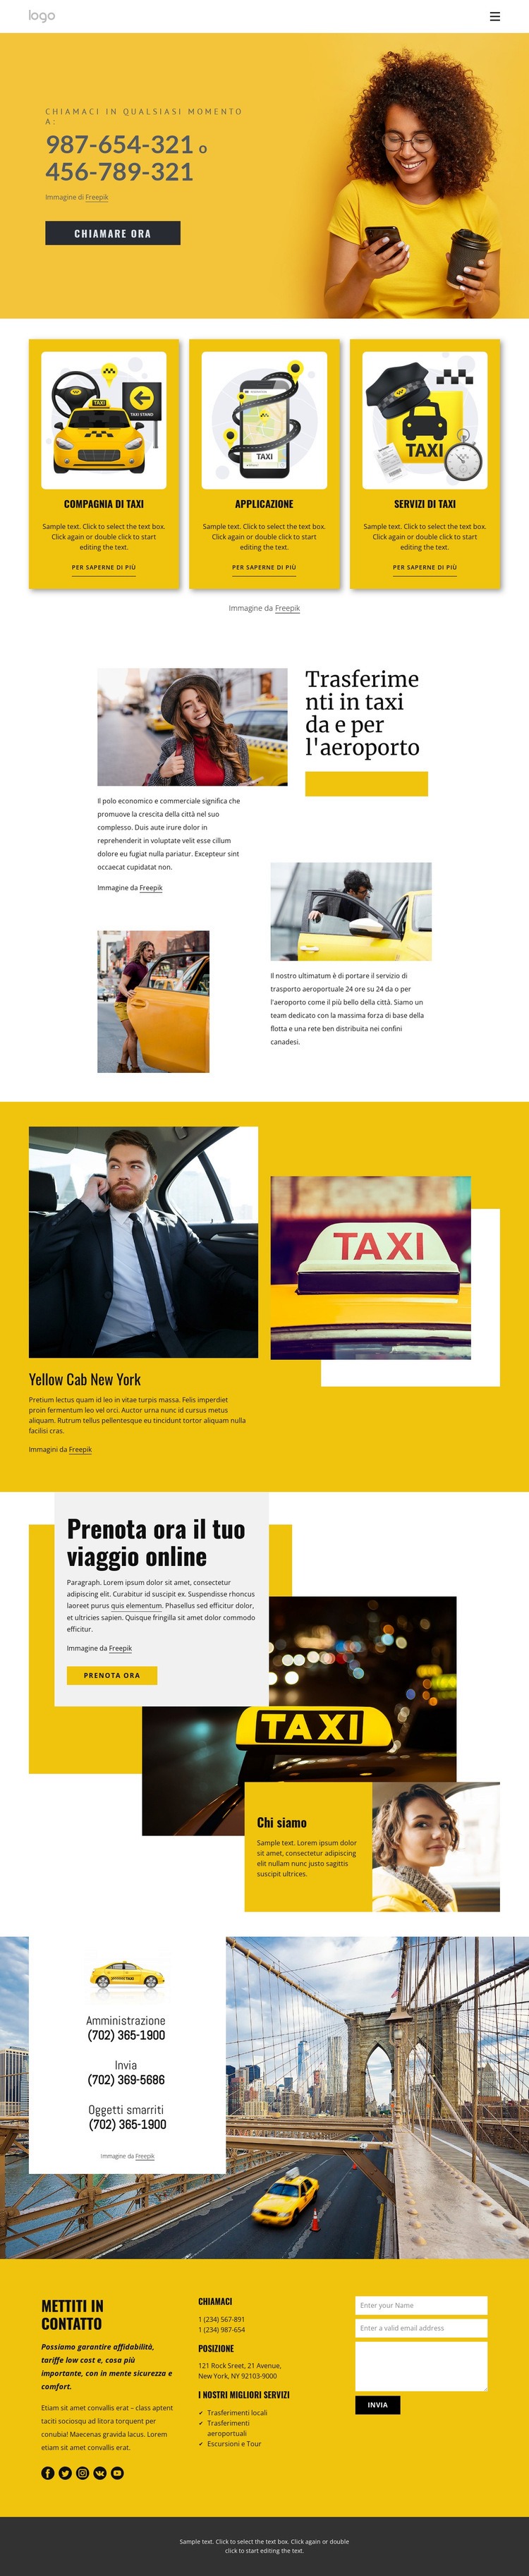 Servizio taxi di qualità Mockup del sito web